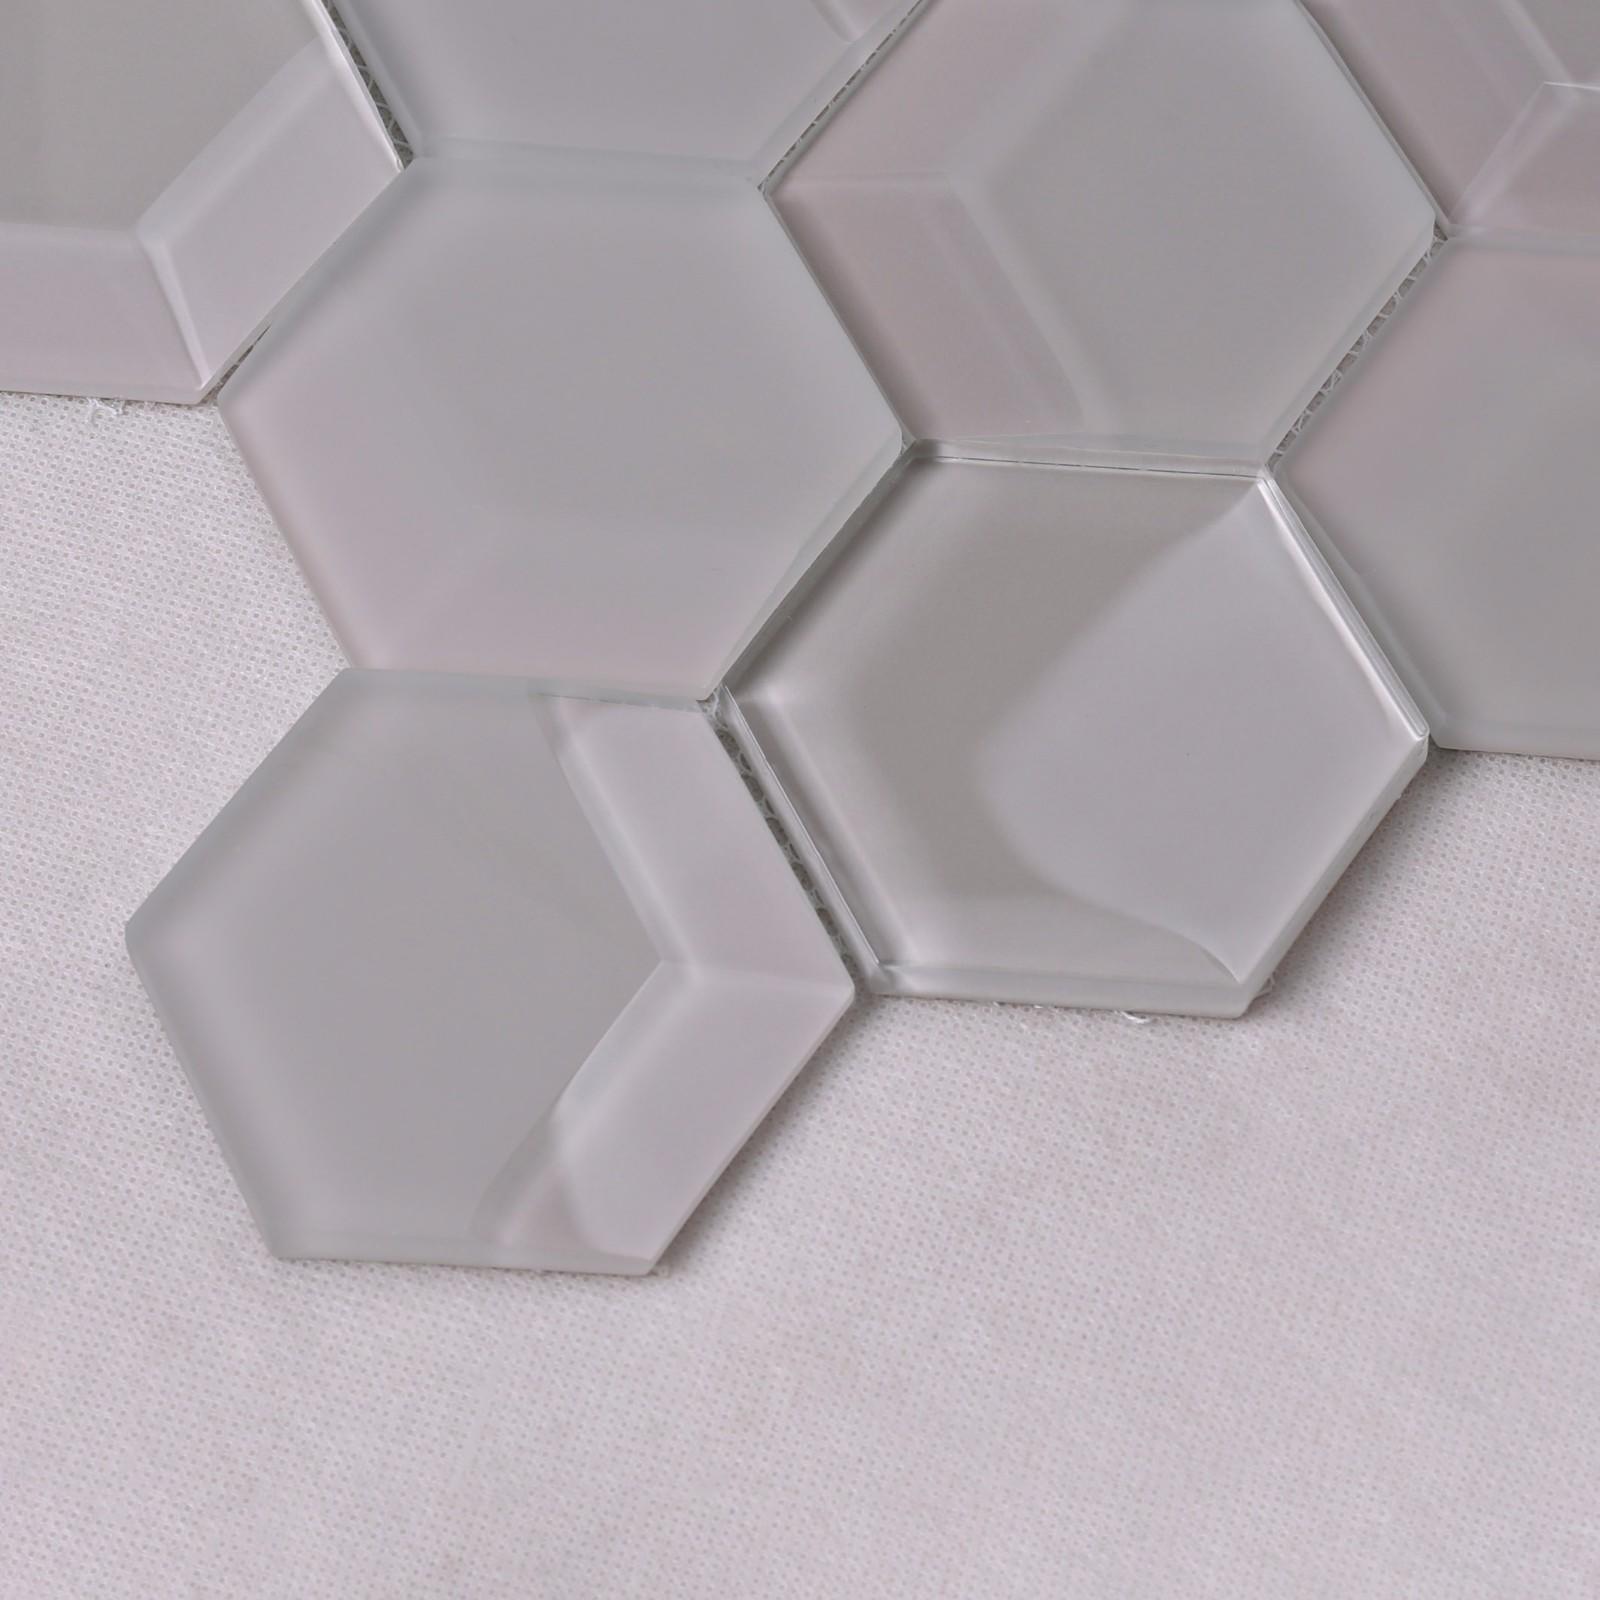 Latest white glass tile aluminum wholesale for living room